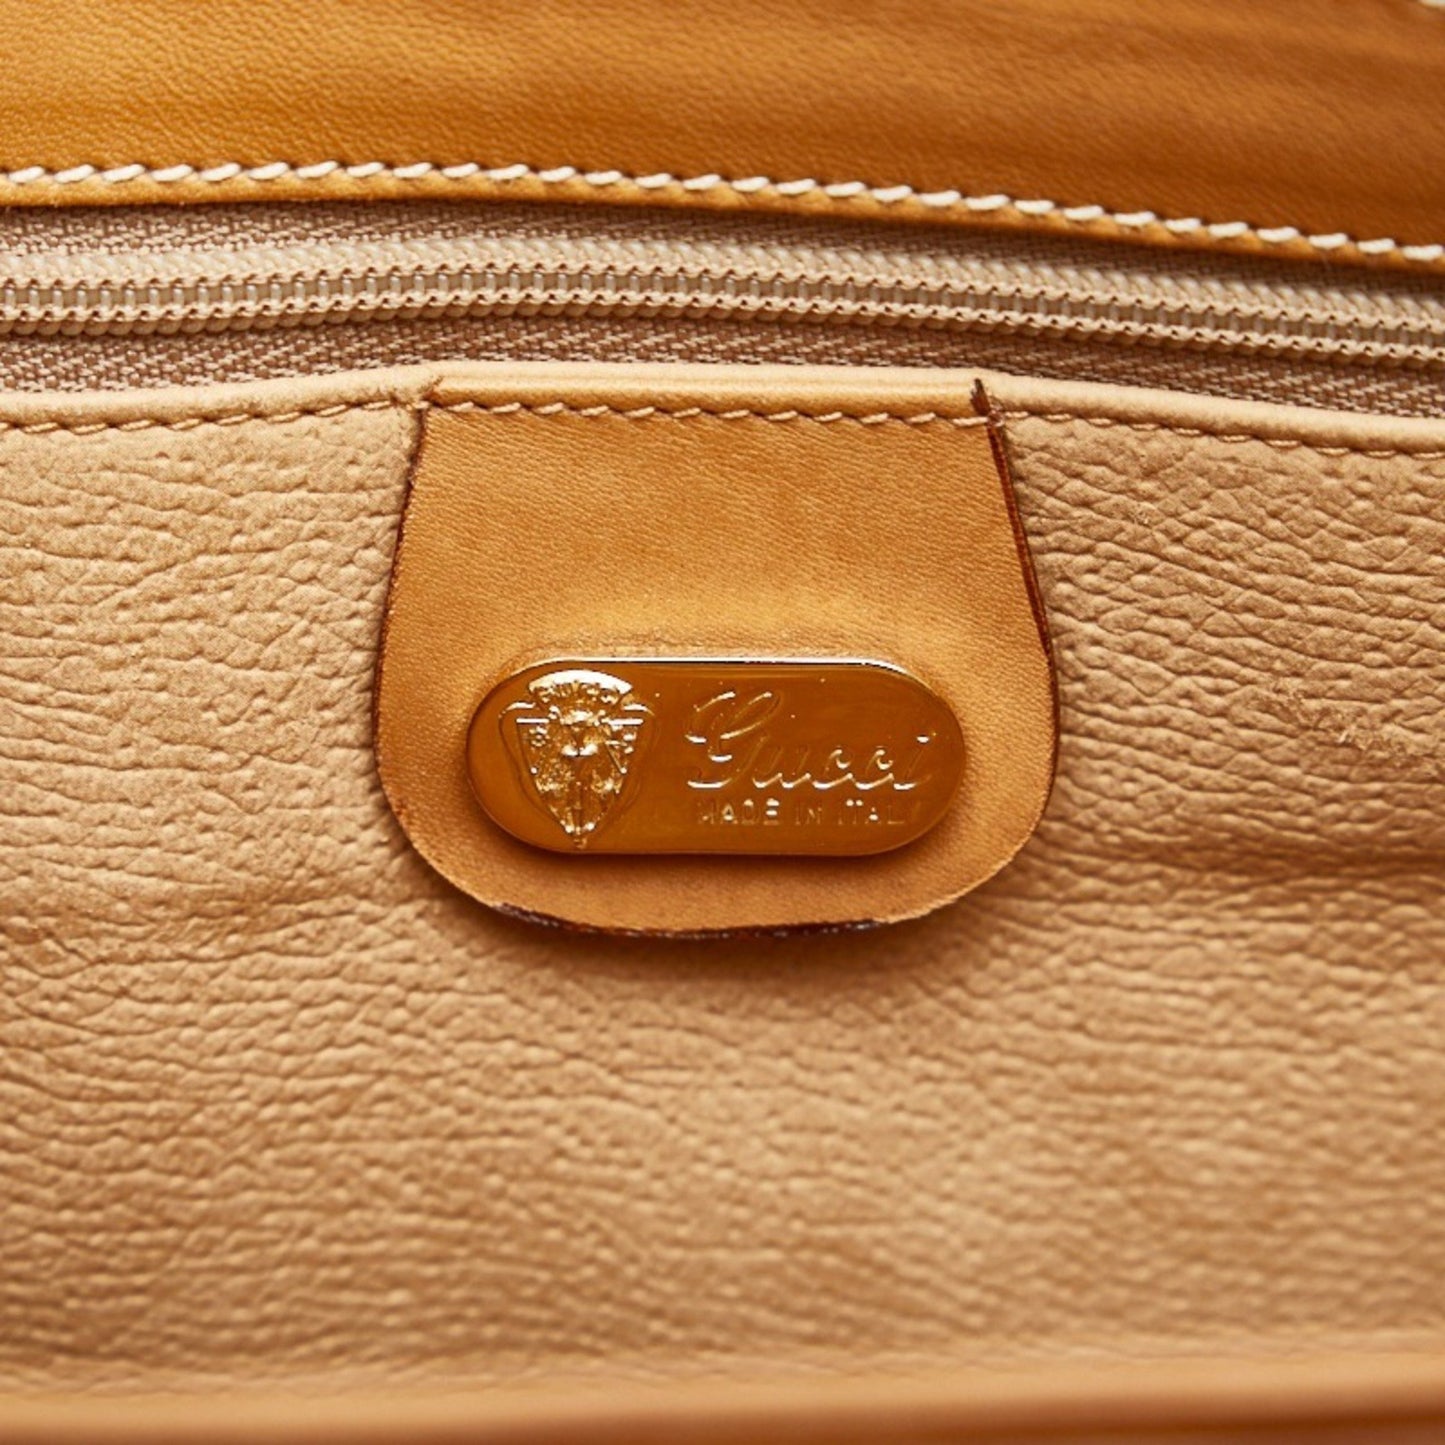 Gucci Guccissima Handbag